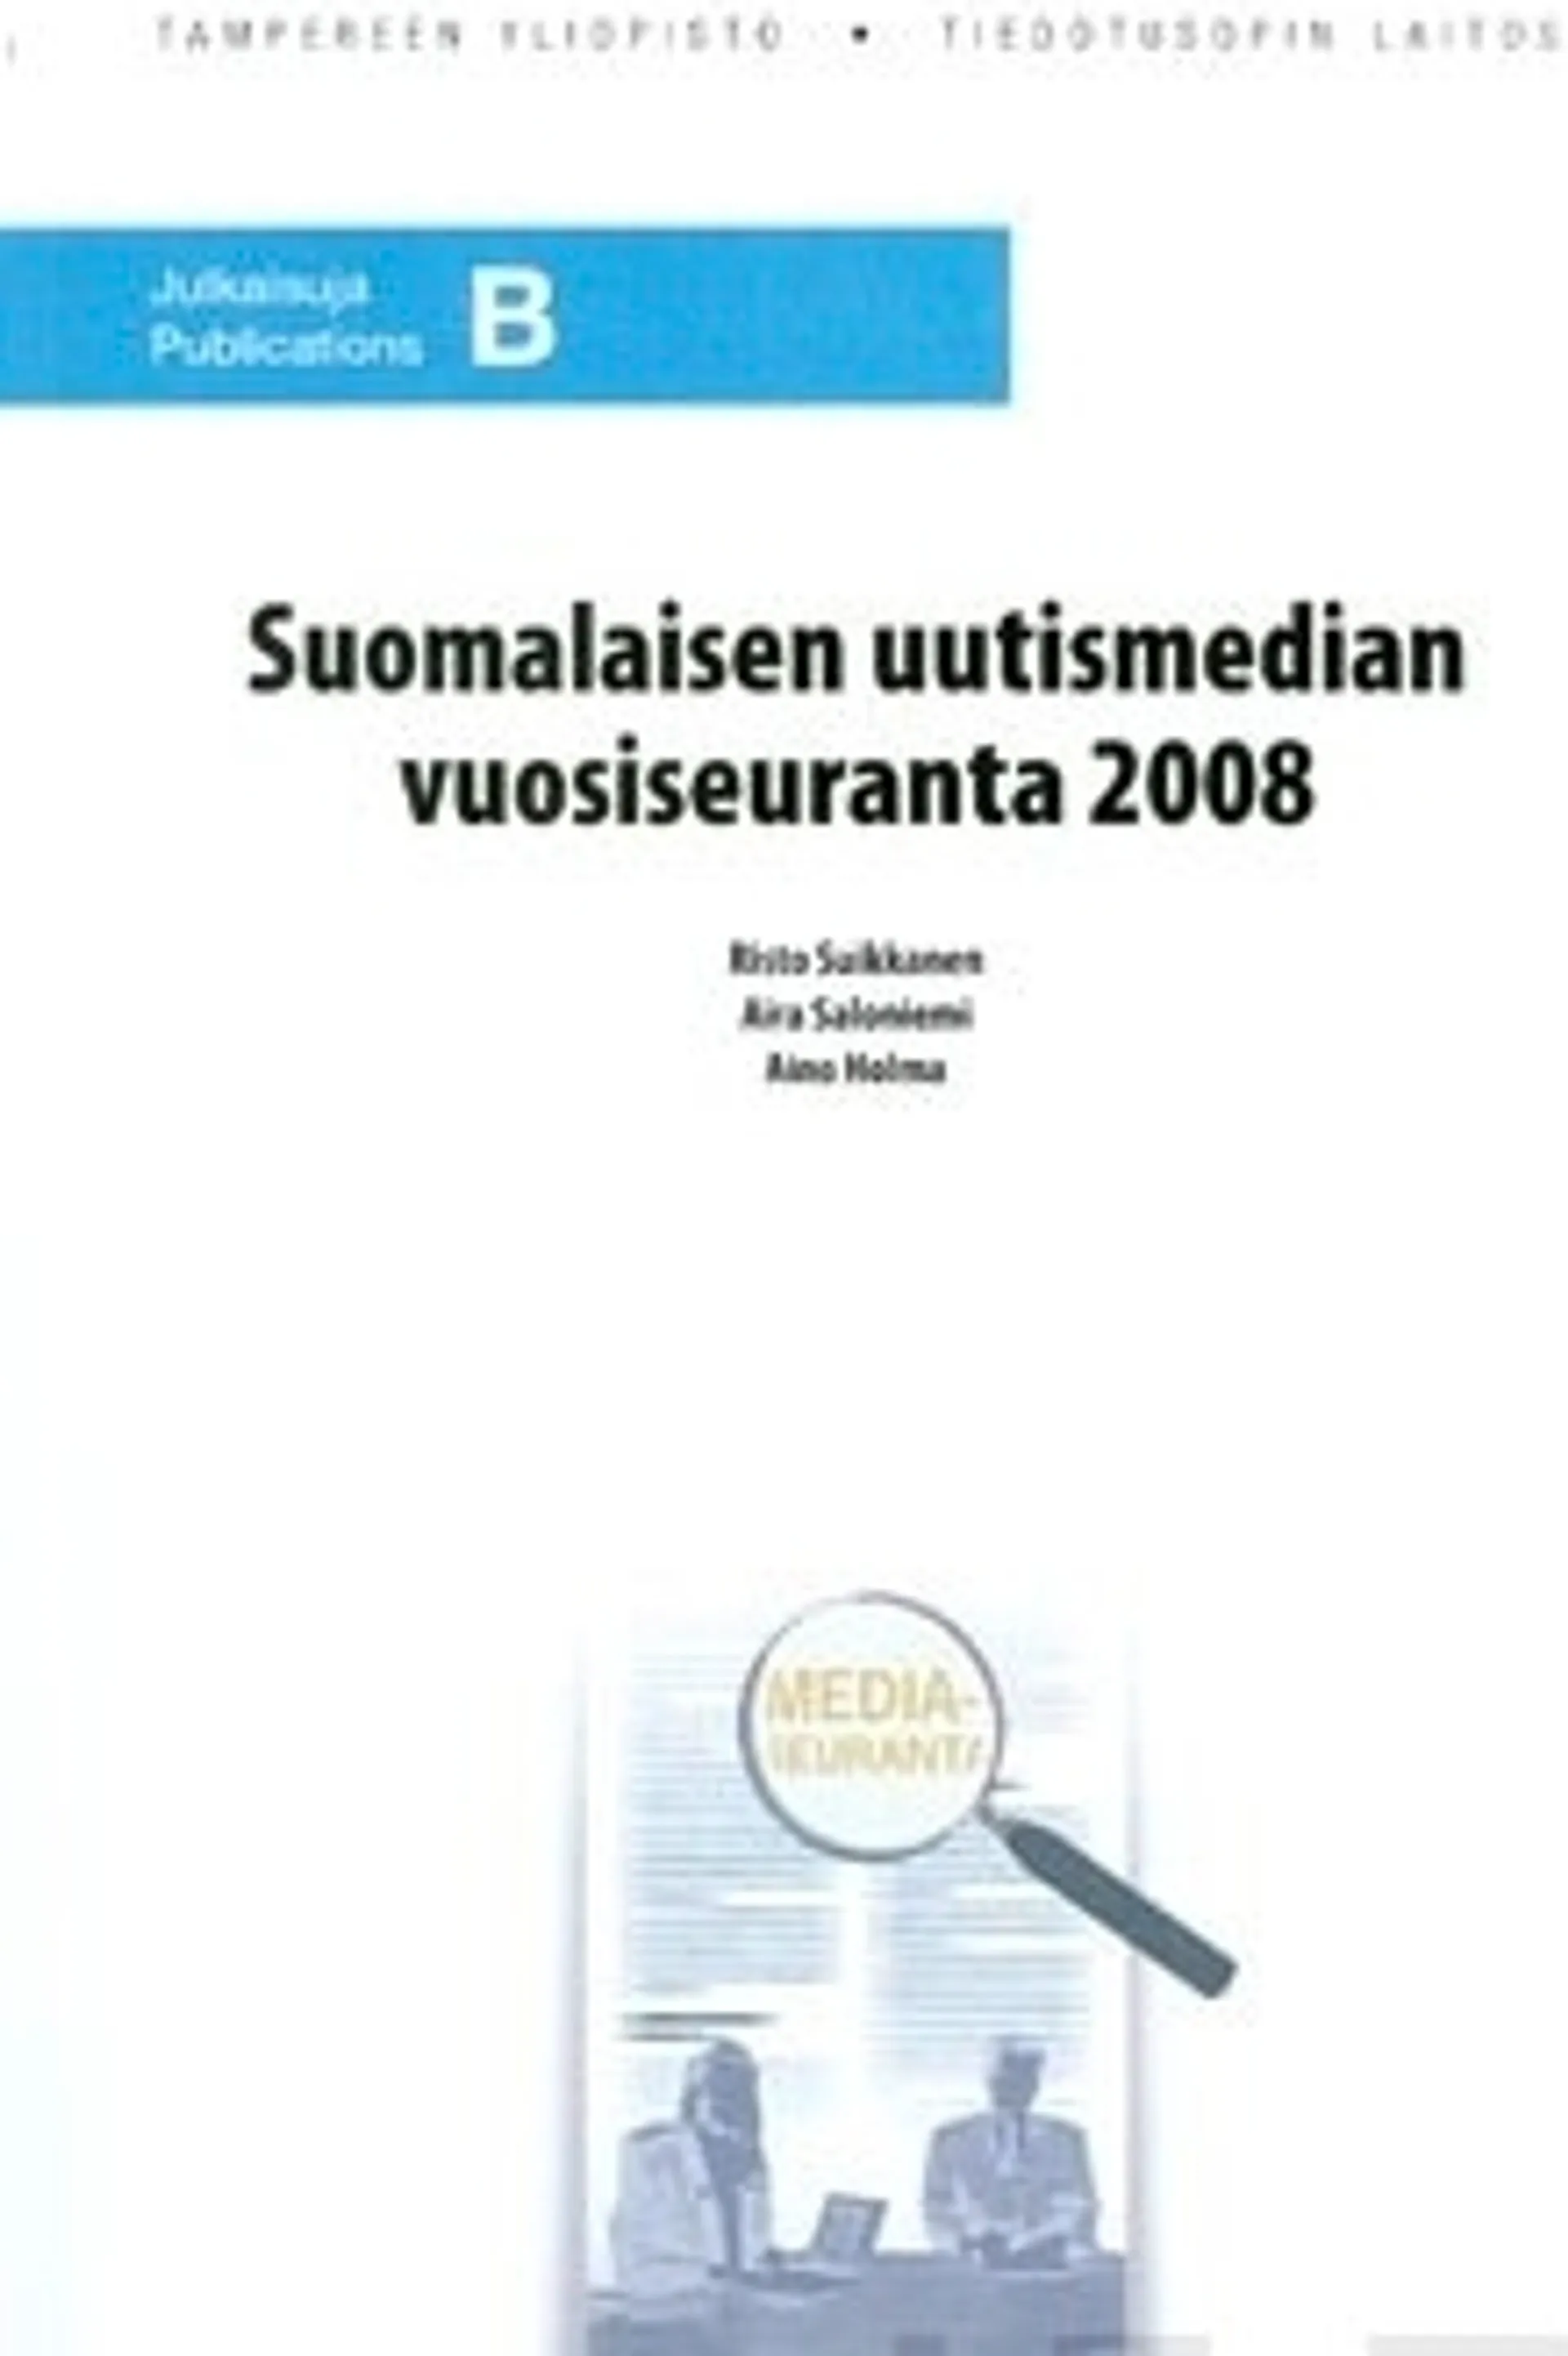 Suomalaisen uutismedian vuosiseuranta 2008